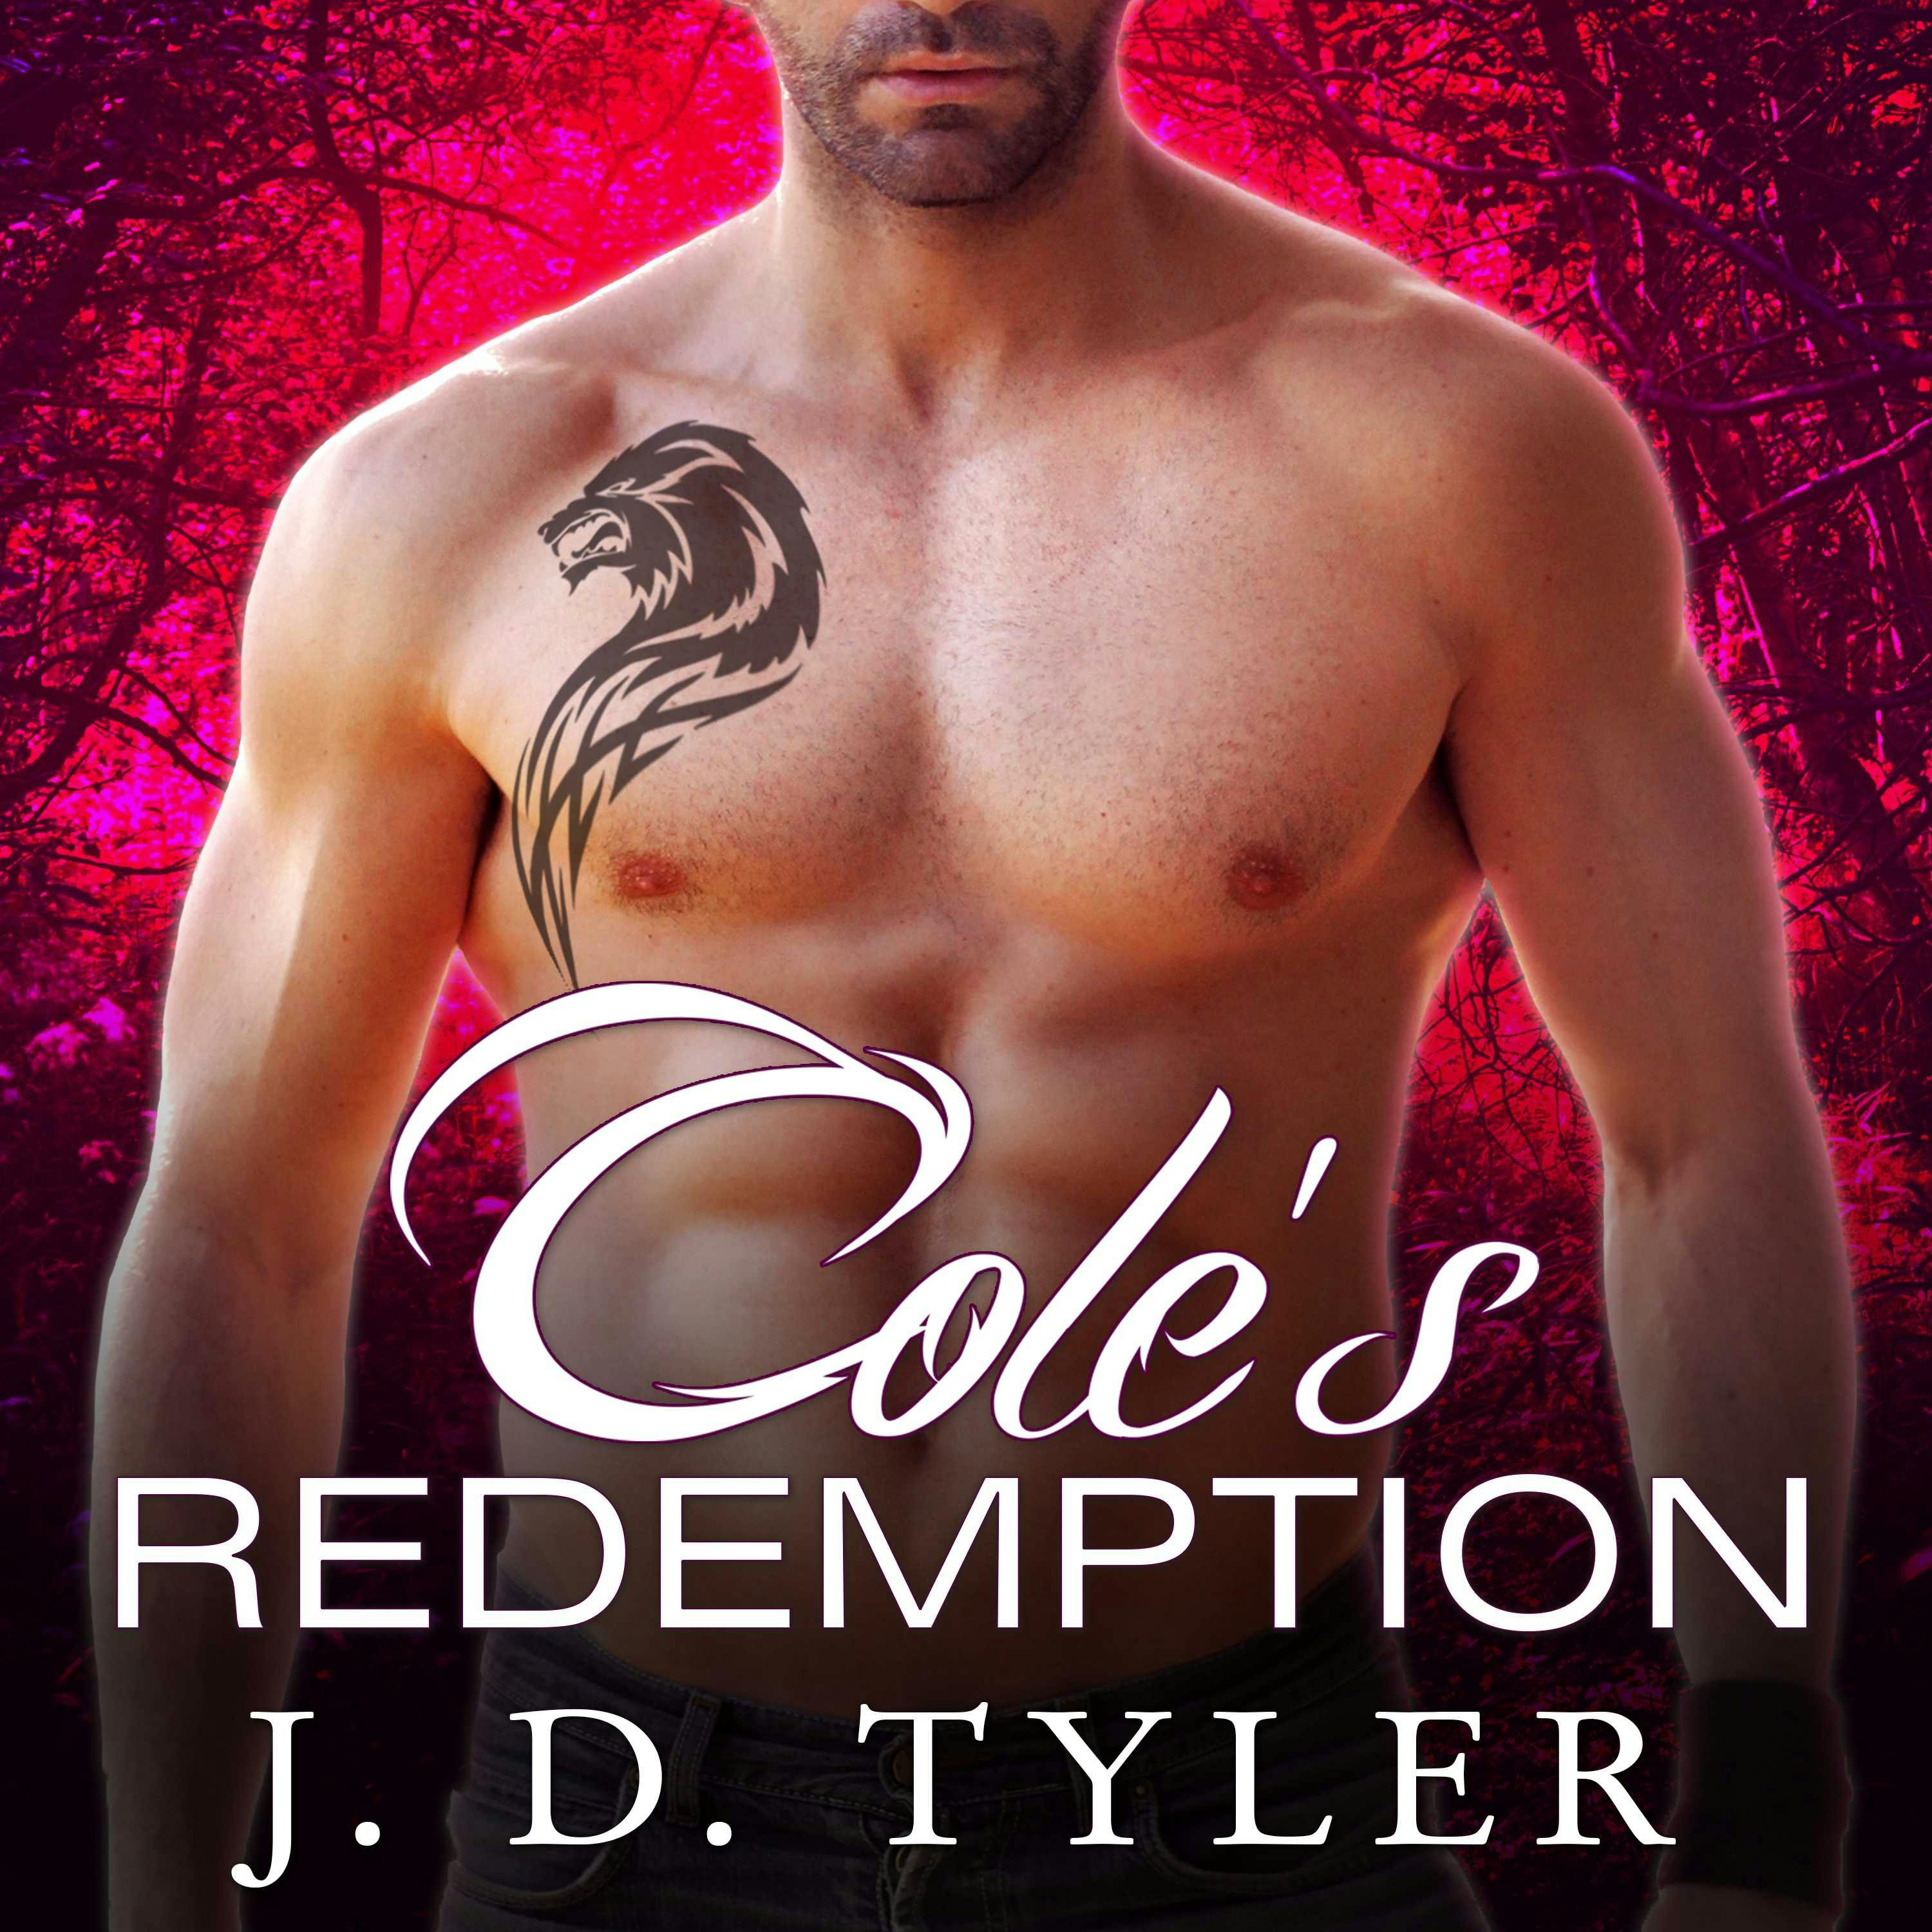 Cole's Redemption - J. D. Tyler